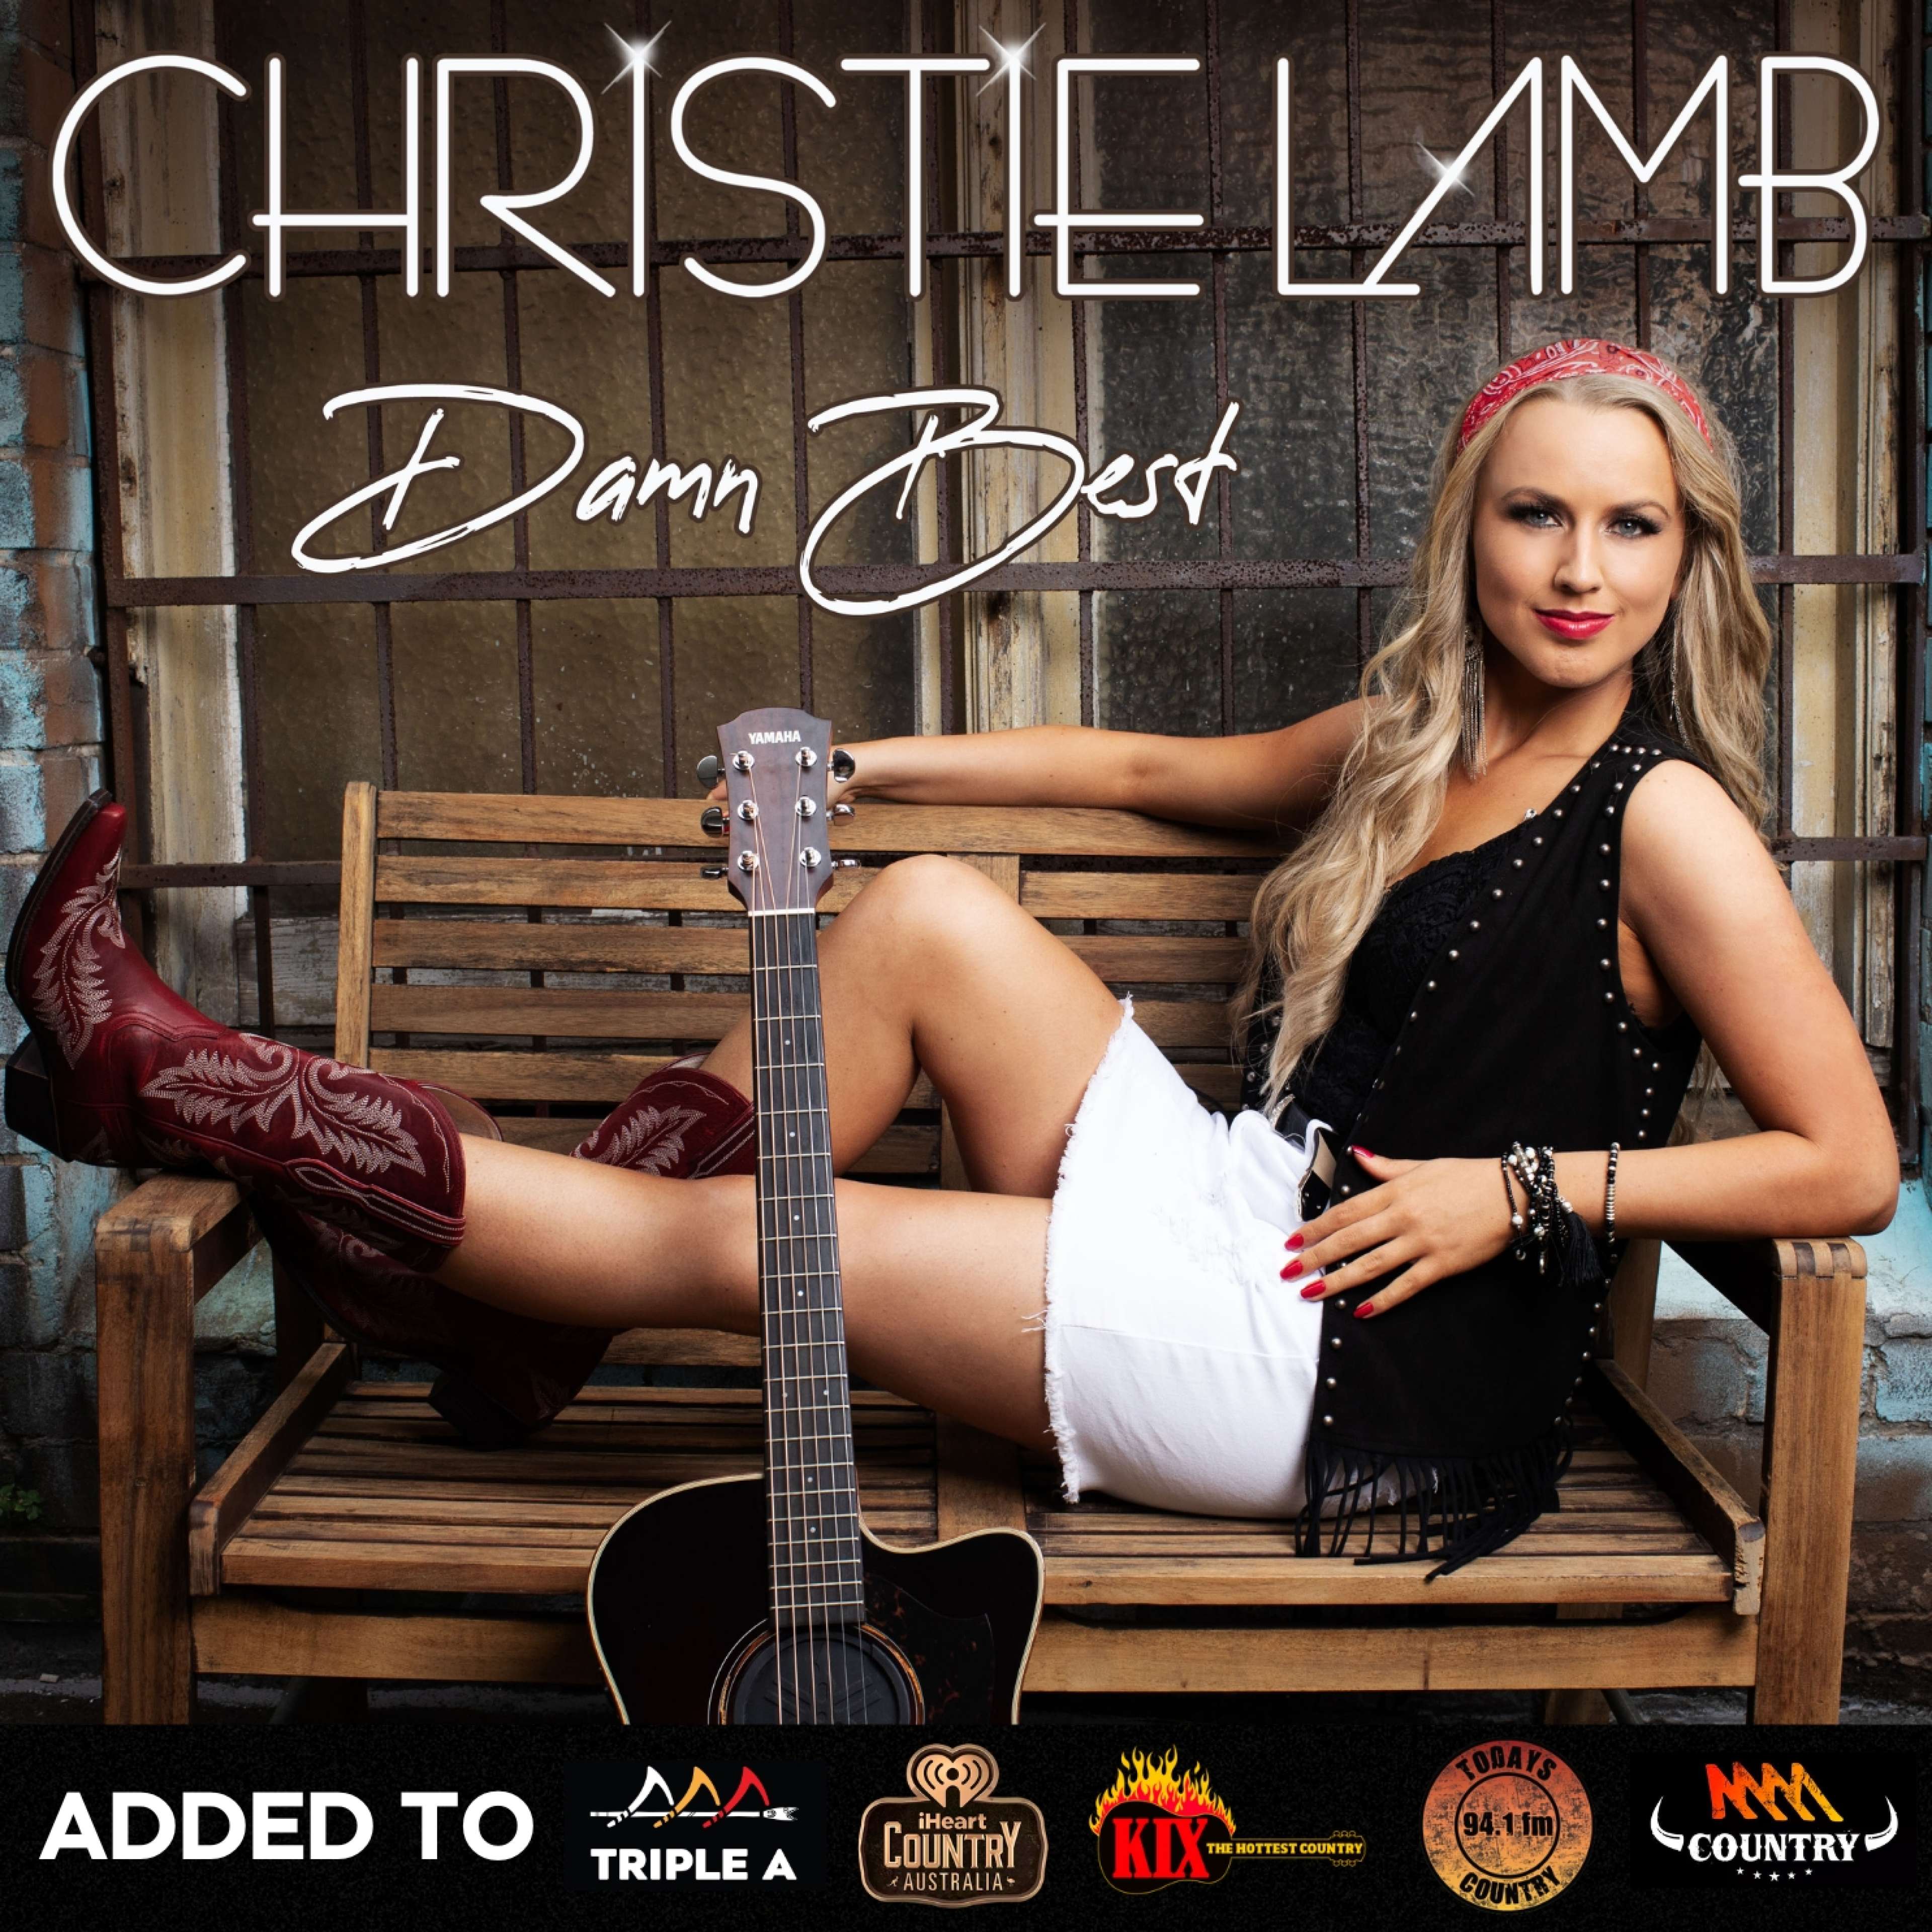 Christie Lamb - 